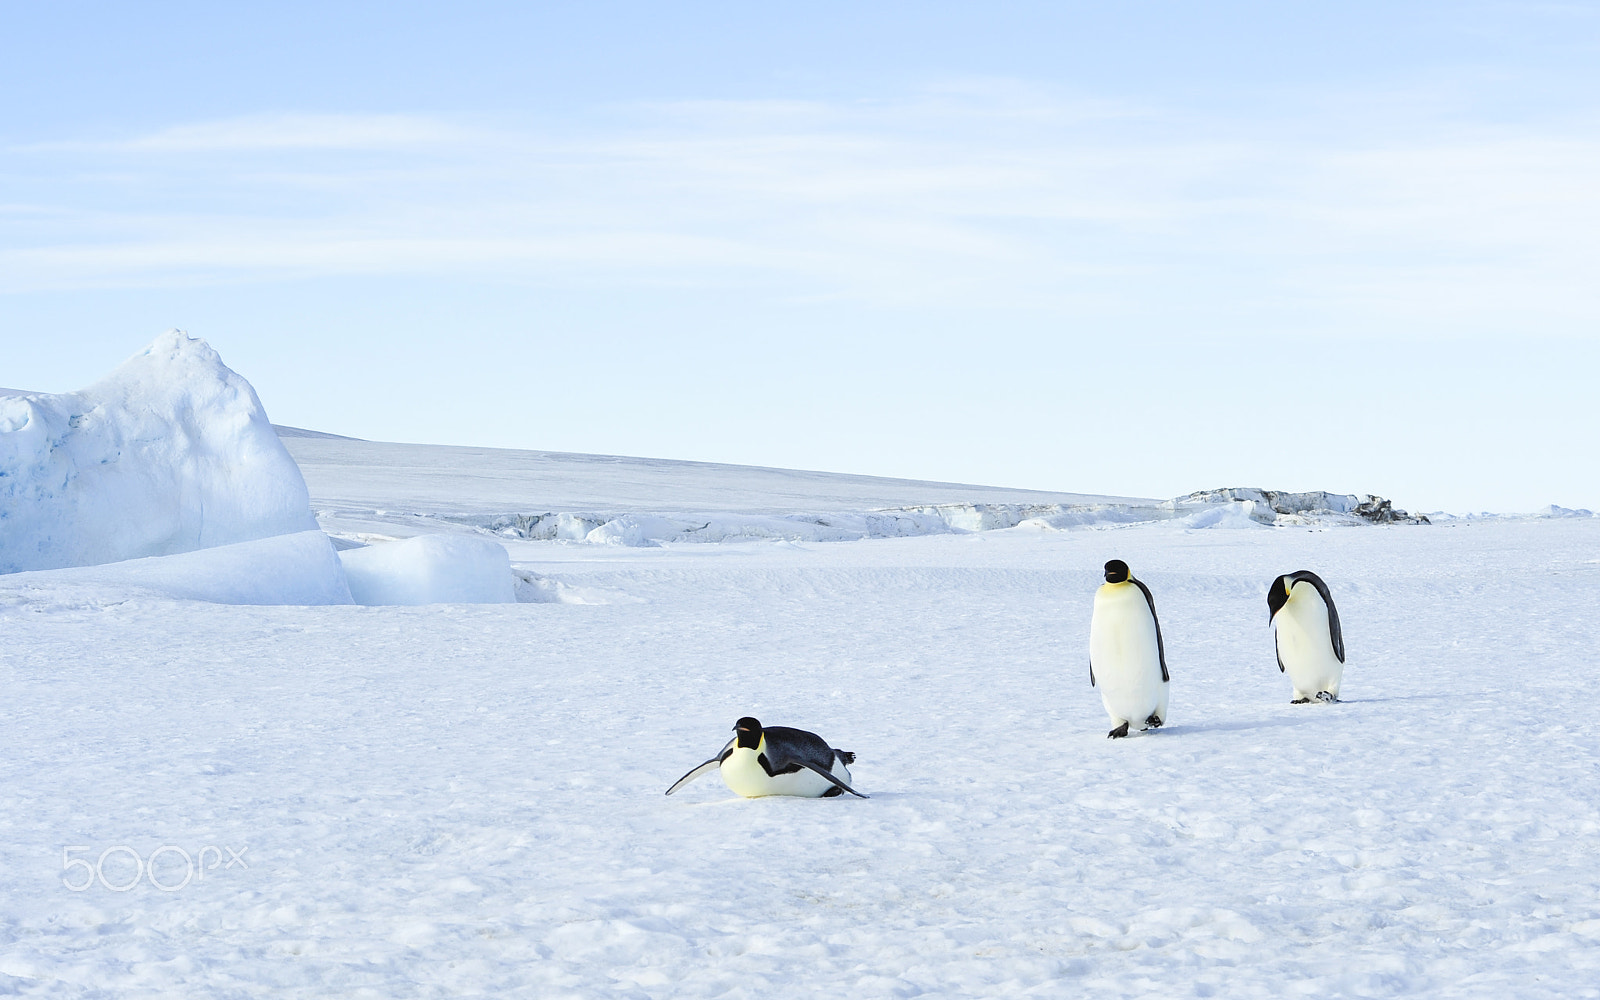 Nikon D700 + Nikon AF Nikkor 80-400mm F4.5-5.6D ED VR sample photo. Three emperor penguins on the snow photography